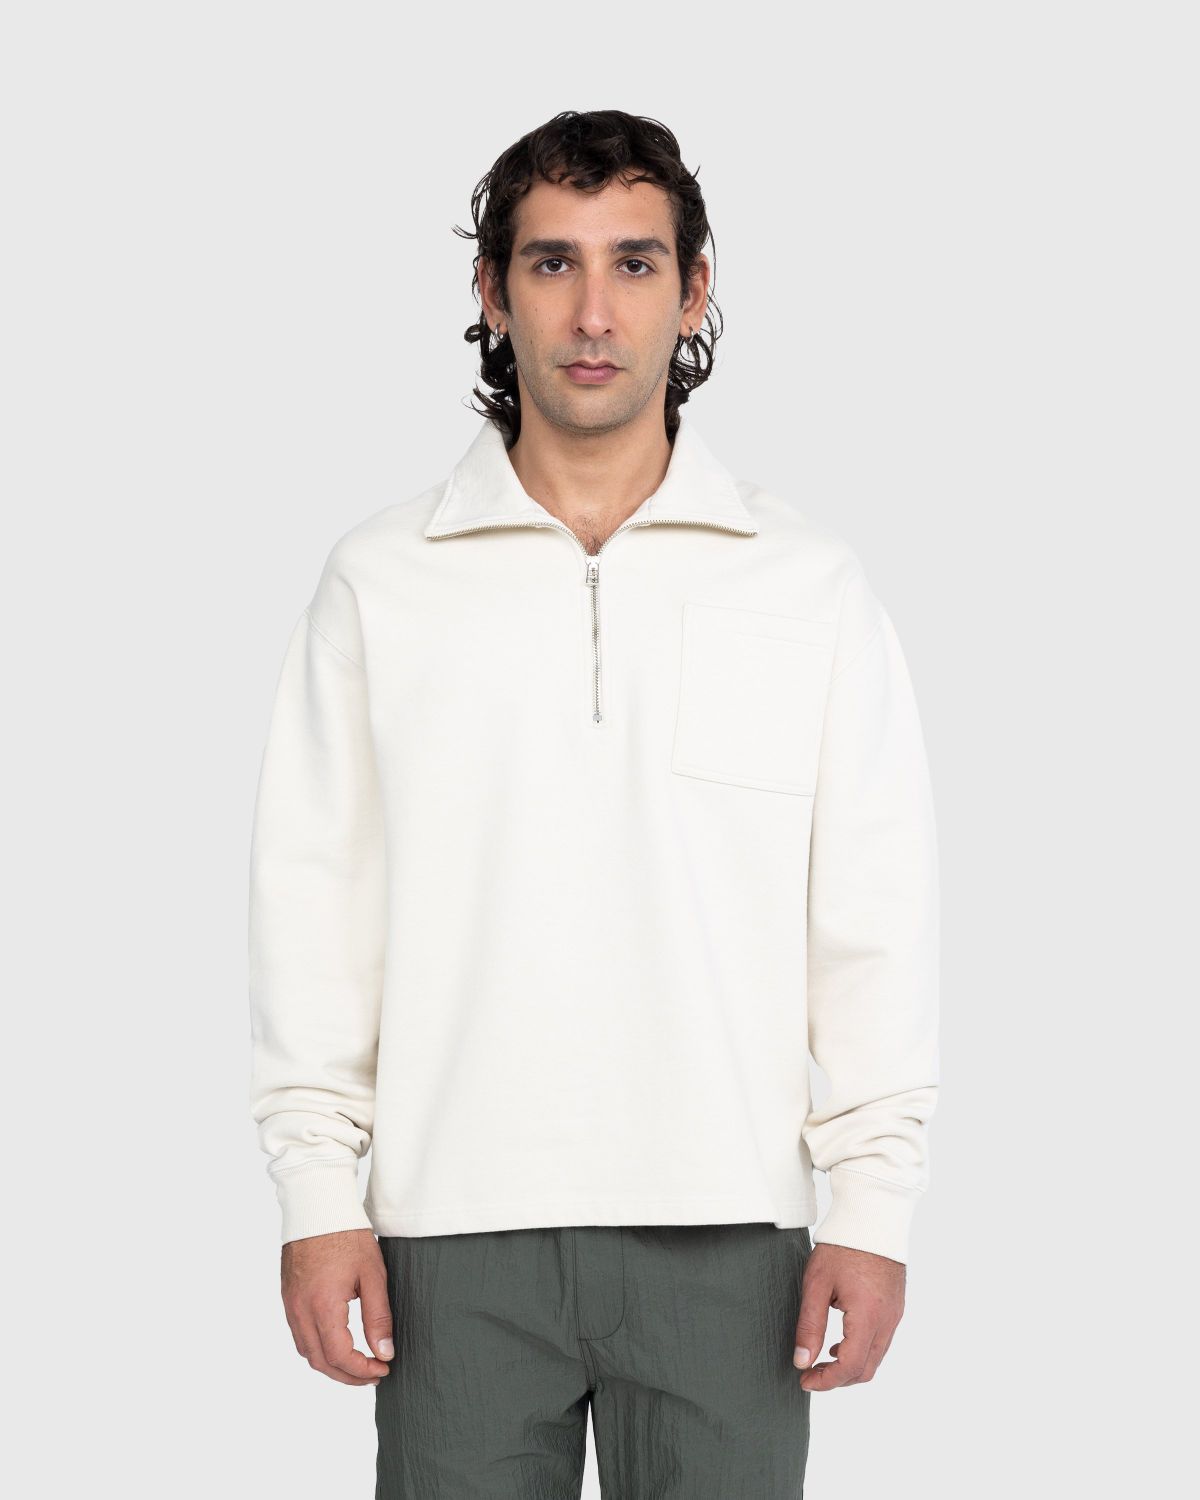 Highsnobiety – Fleece Quarter Zip Off-White - Zip-Up Sweats - Beige - Image 2